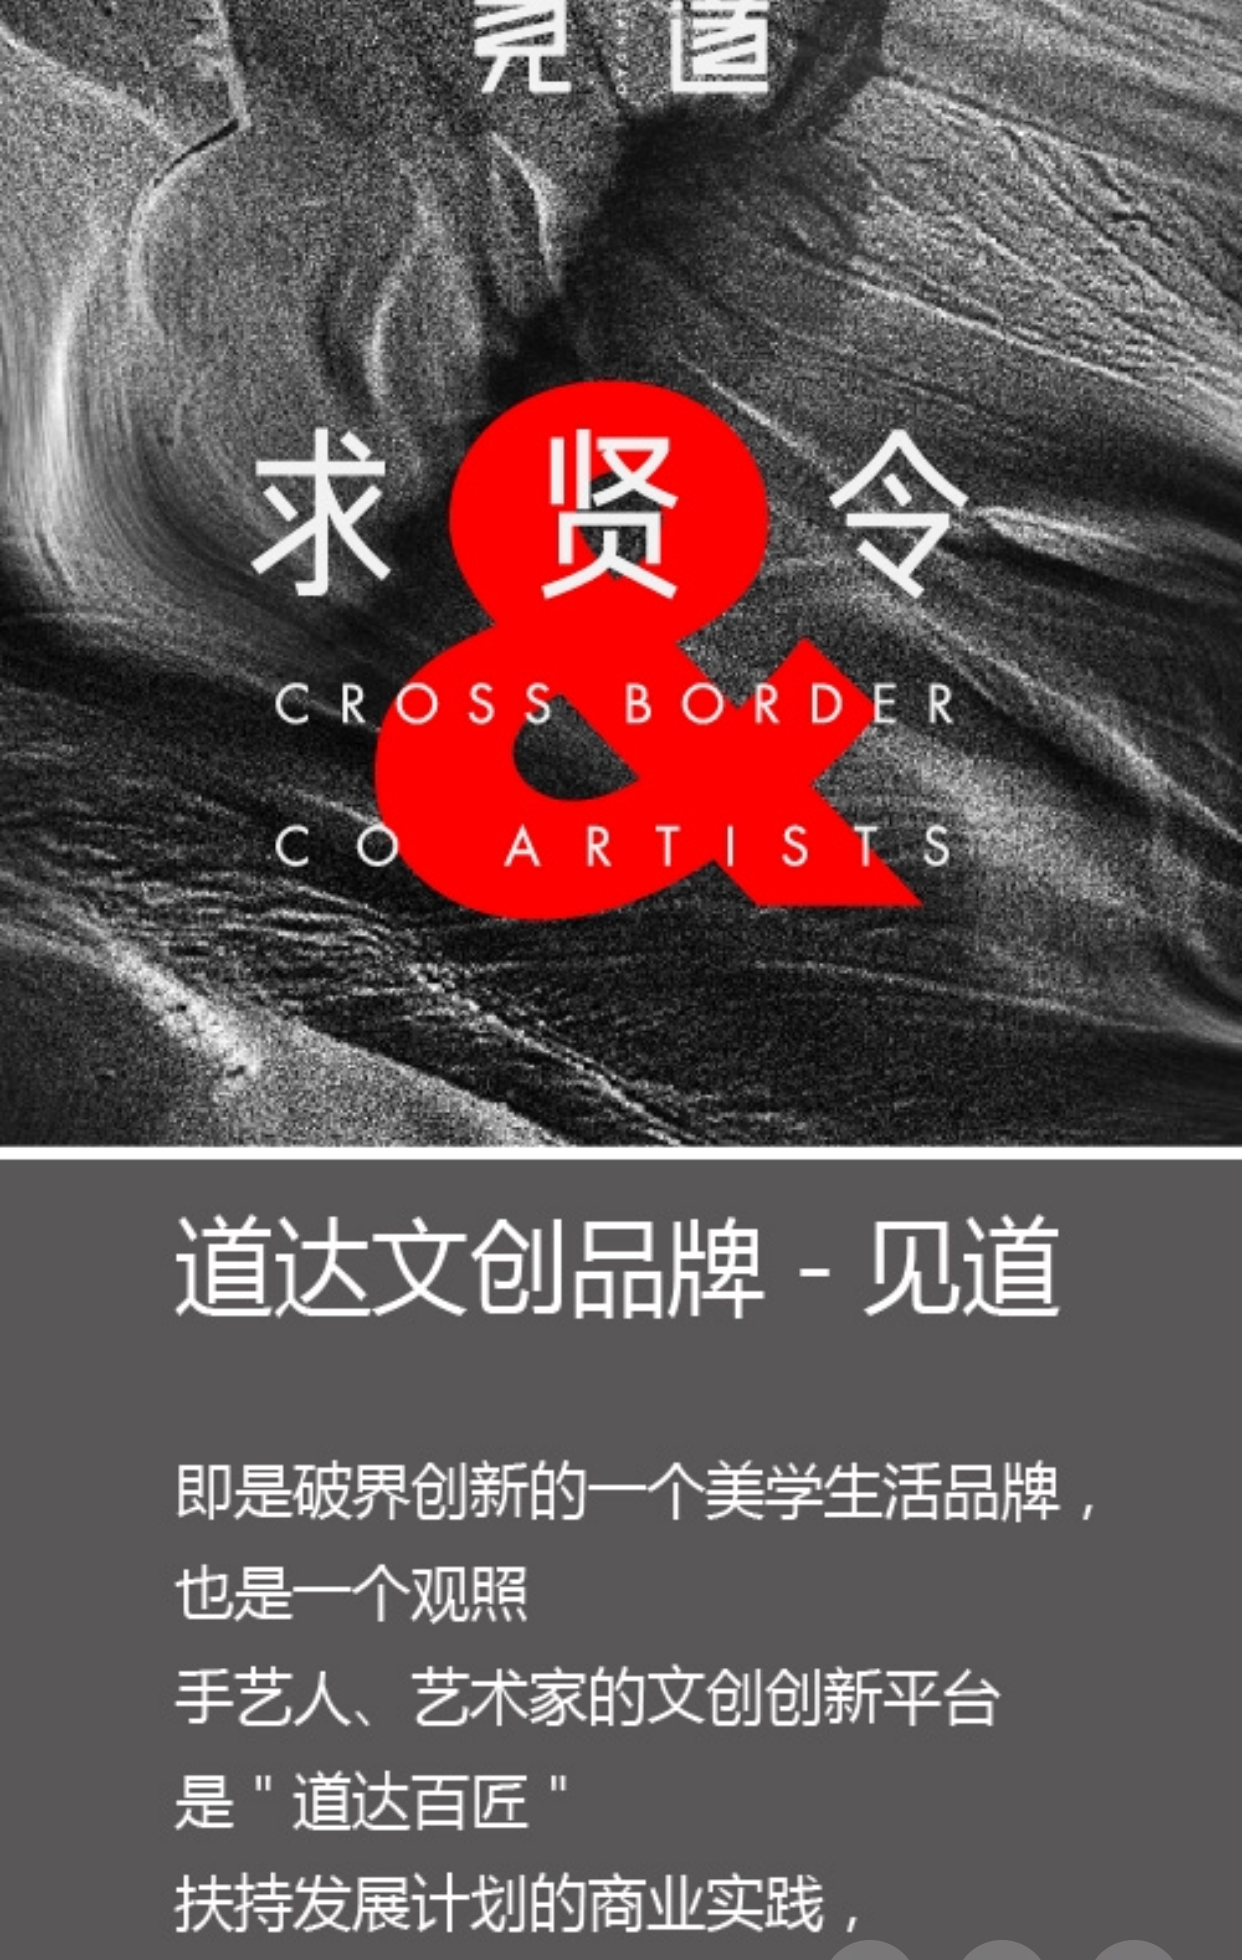 【會員(yuán)風采】副會長單位道達廣告丨文創品牌“見道”發布求賢令